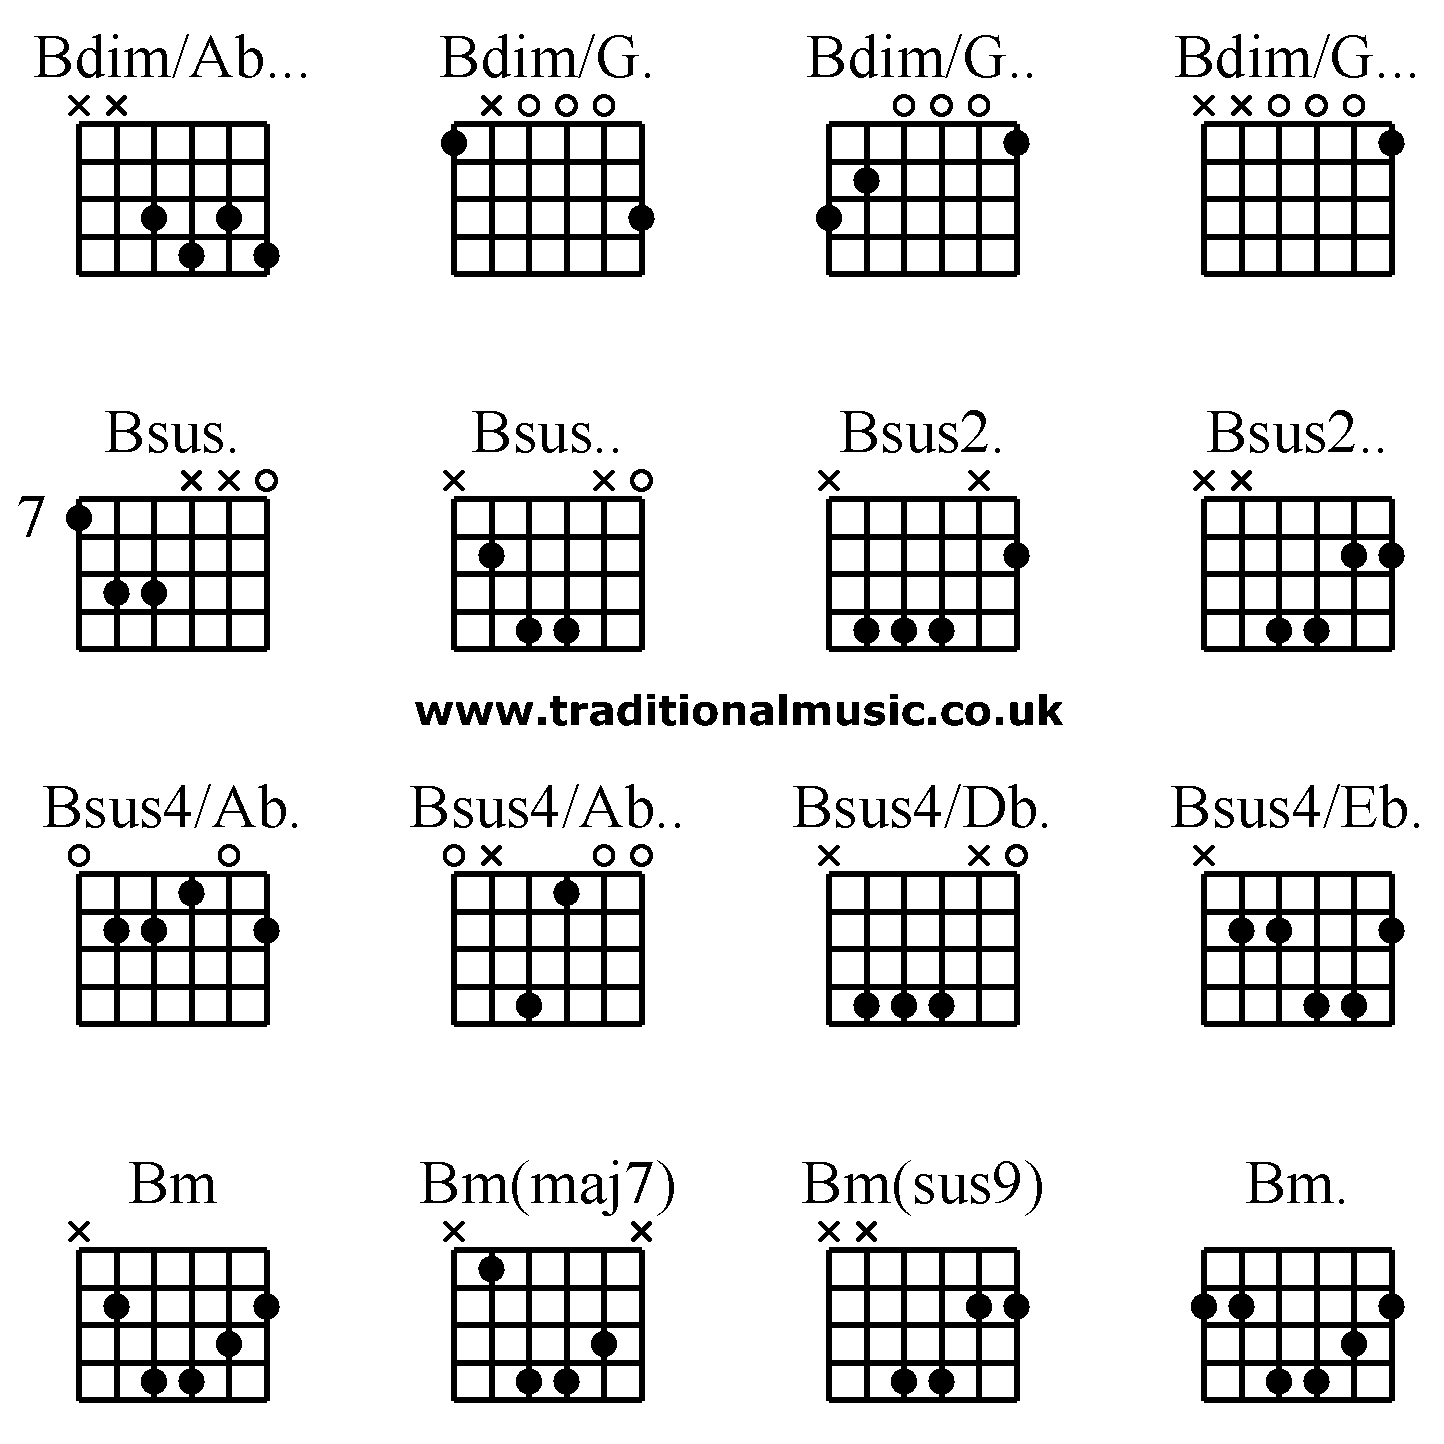 Advanced guitar chords:Bdim/Ab... Bdim/G. Bdim/G.. Bdim/G..., Bsus. Bsus.. Bsus2. Bsus2.., Bsus4/Ab. Bsus4/Ab.. Bsus4/Db. Bsus4/Eb., Bm Bm(maj7) Bm(sus9) Bm.